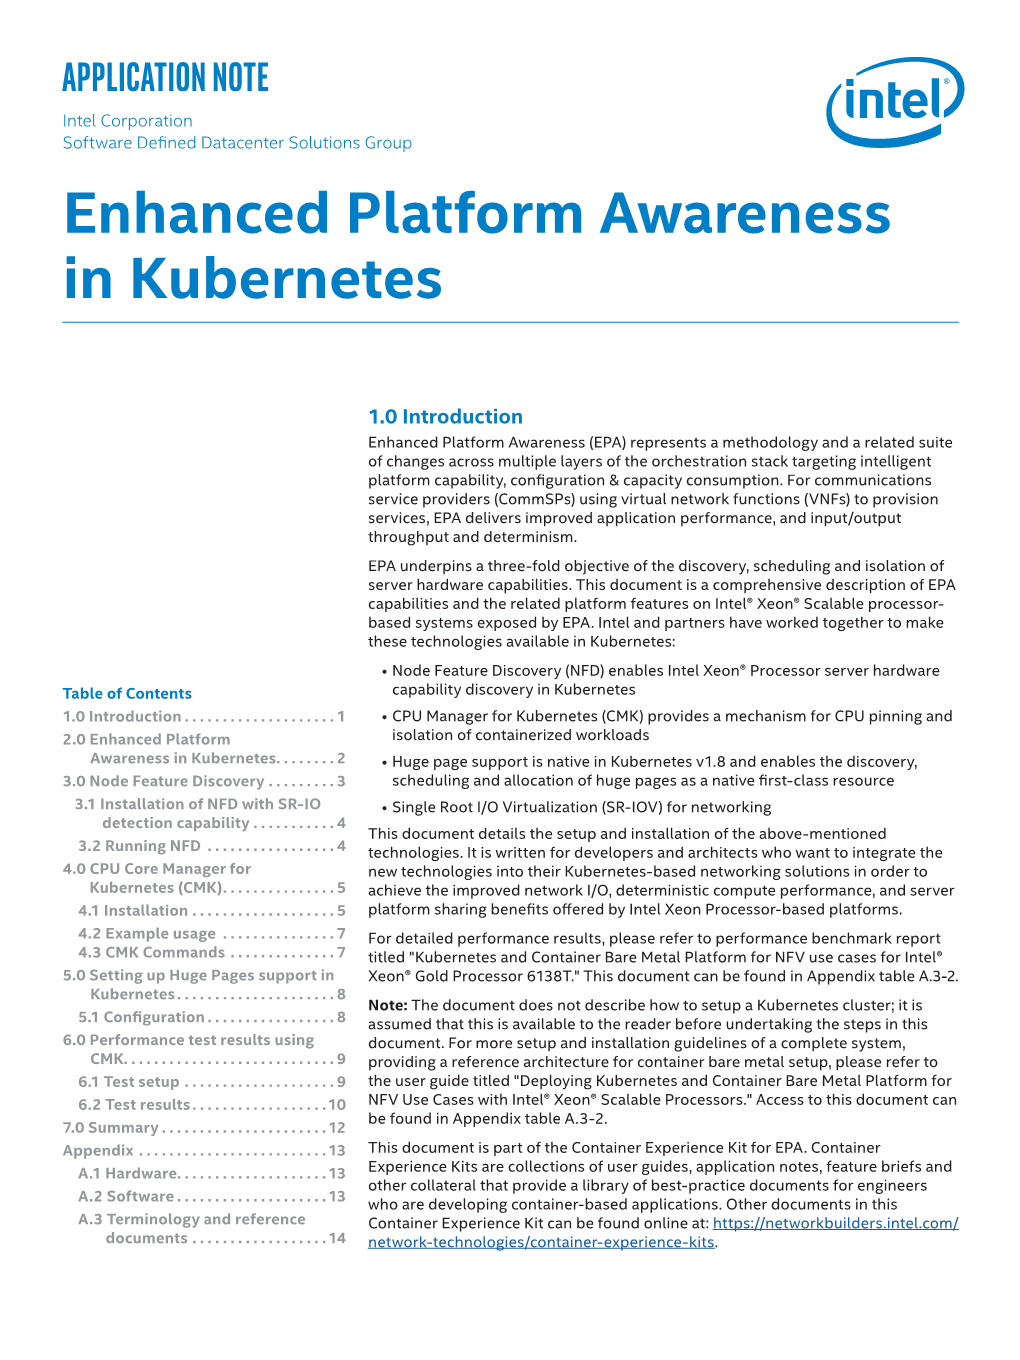 Enhanced Platform Awareness in Kubernetes